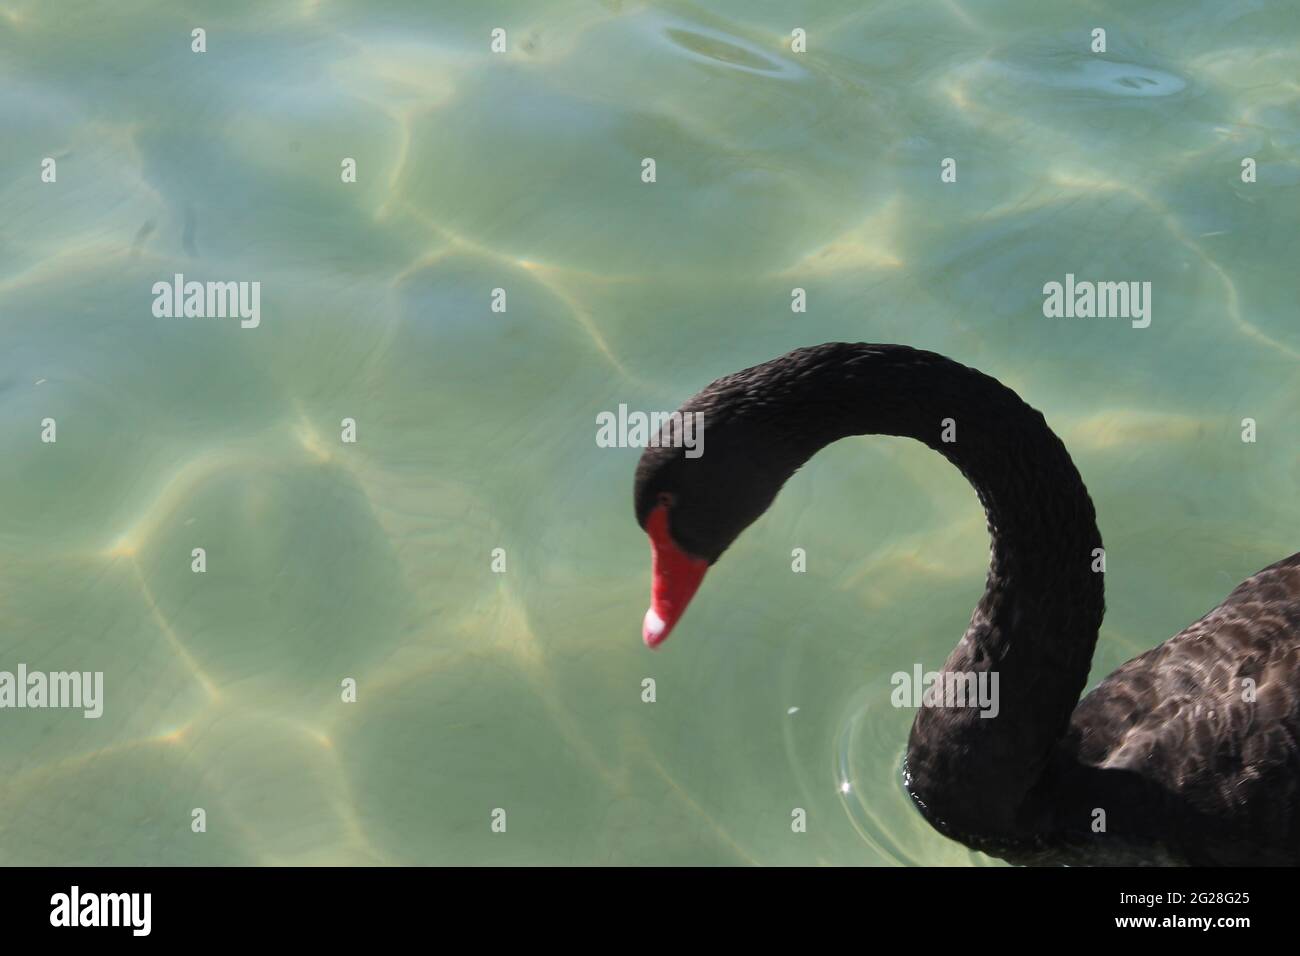 portraits de cygnes noirs muets nageant dans la piscine Banque D'Images